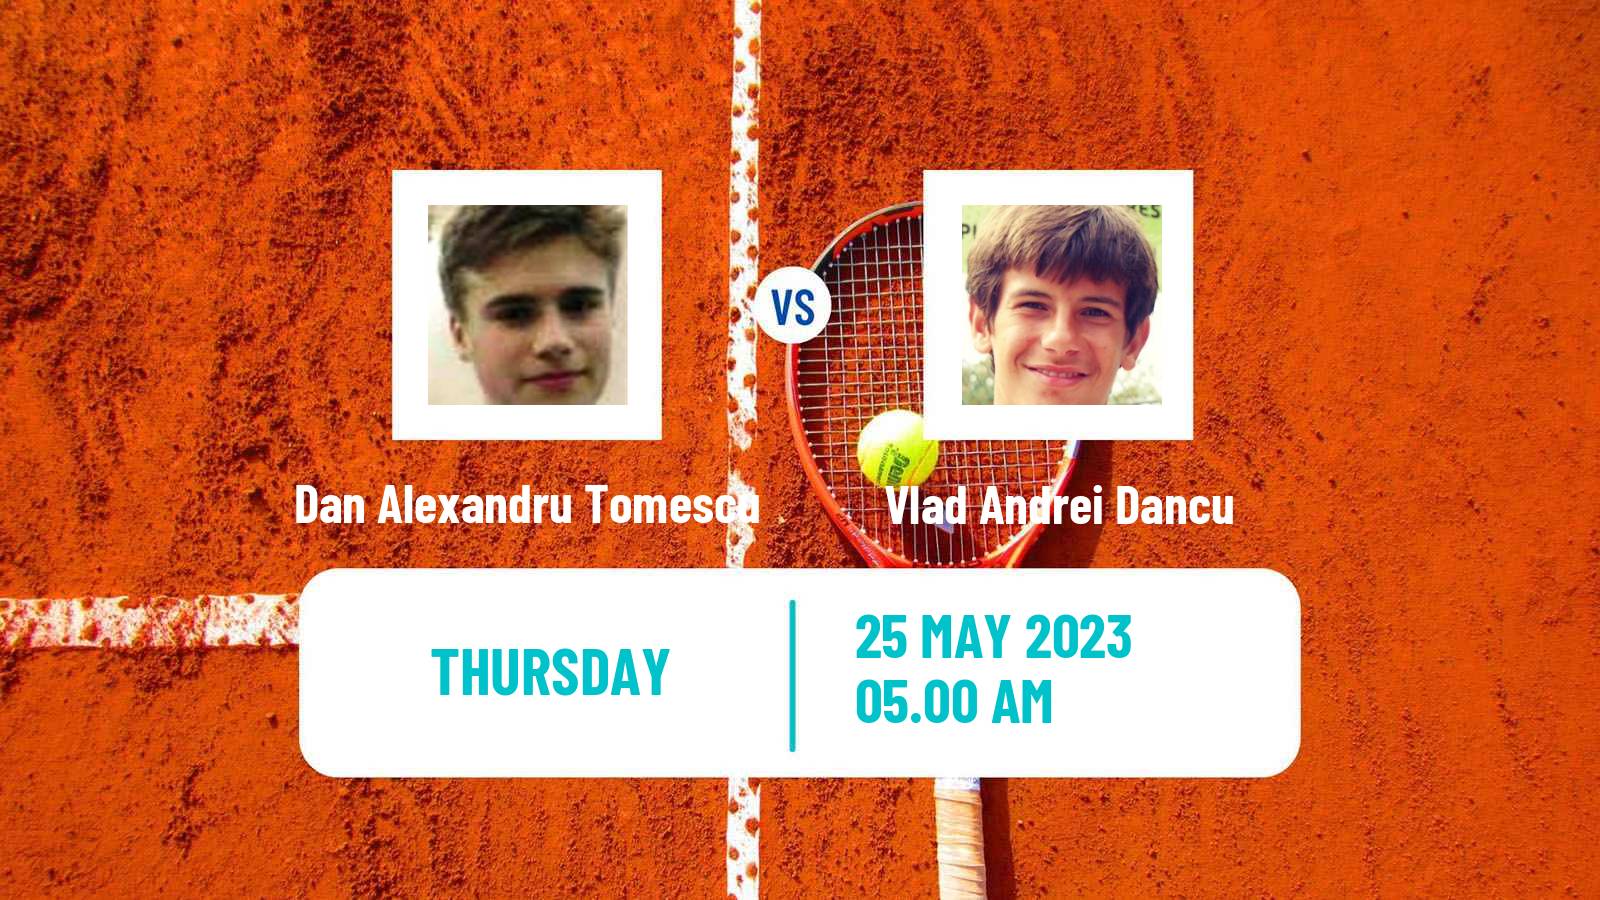 Tennis ITF M15 Bucharest Men Dan Alexandru Tomescu - Vlad Andrei Dancu